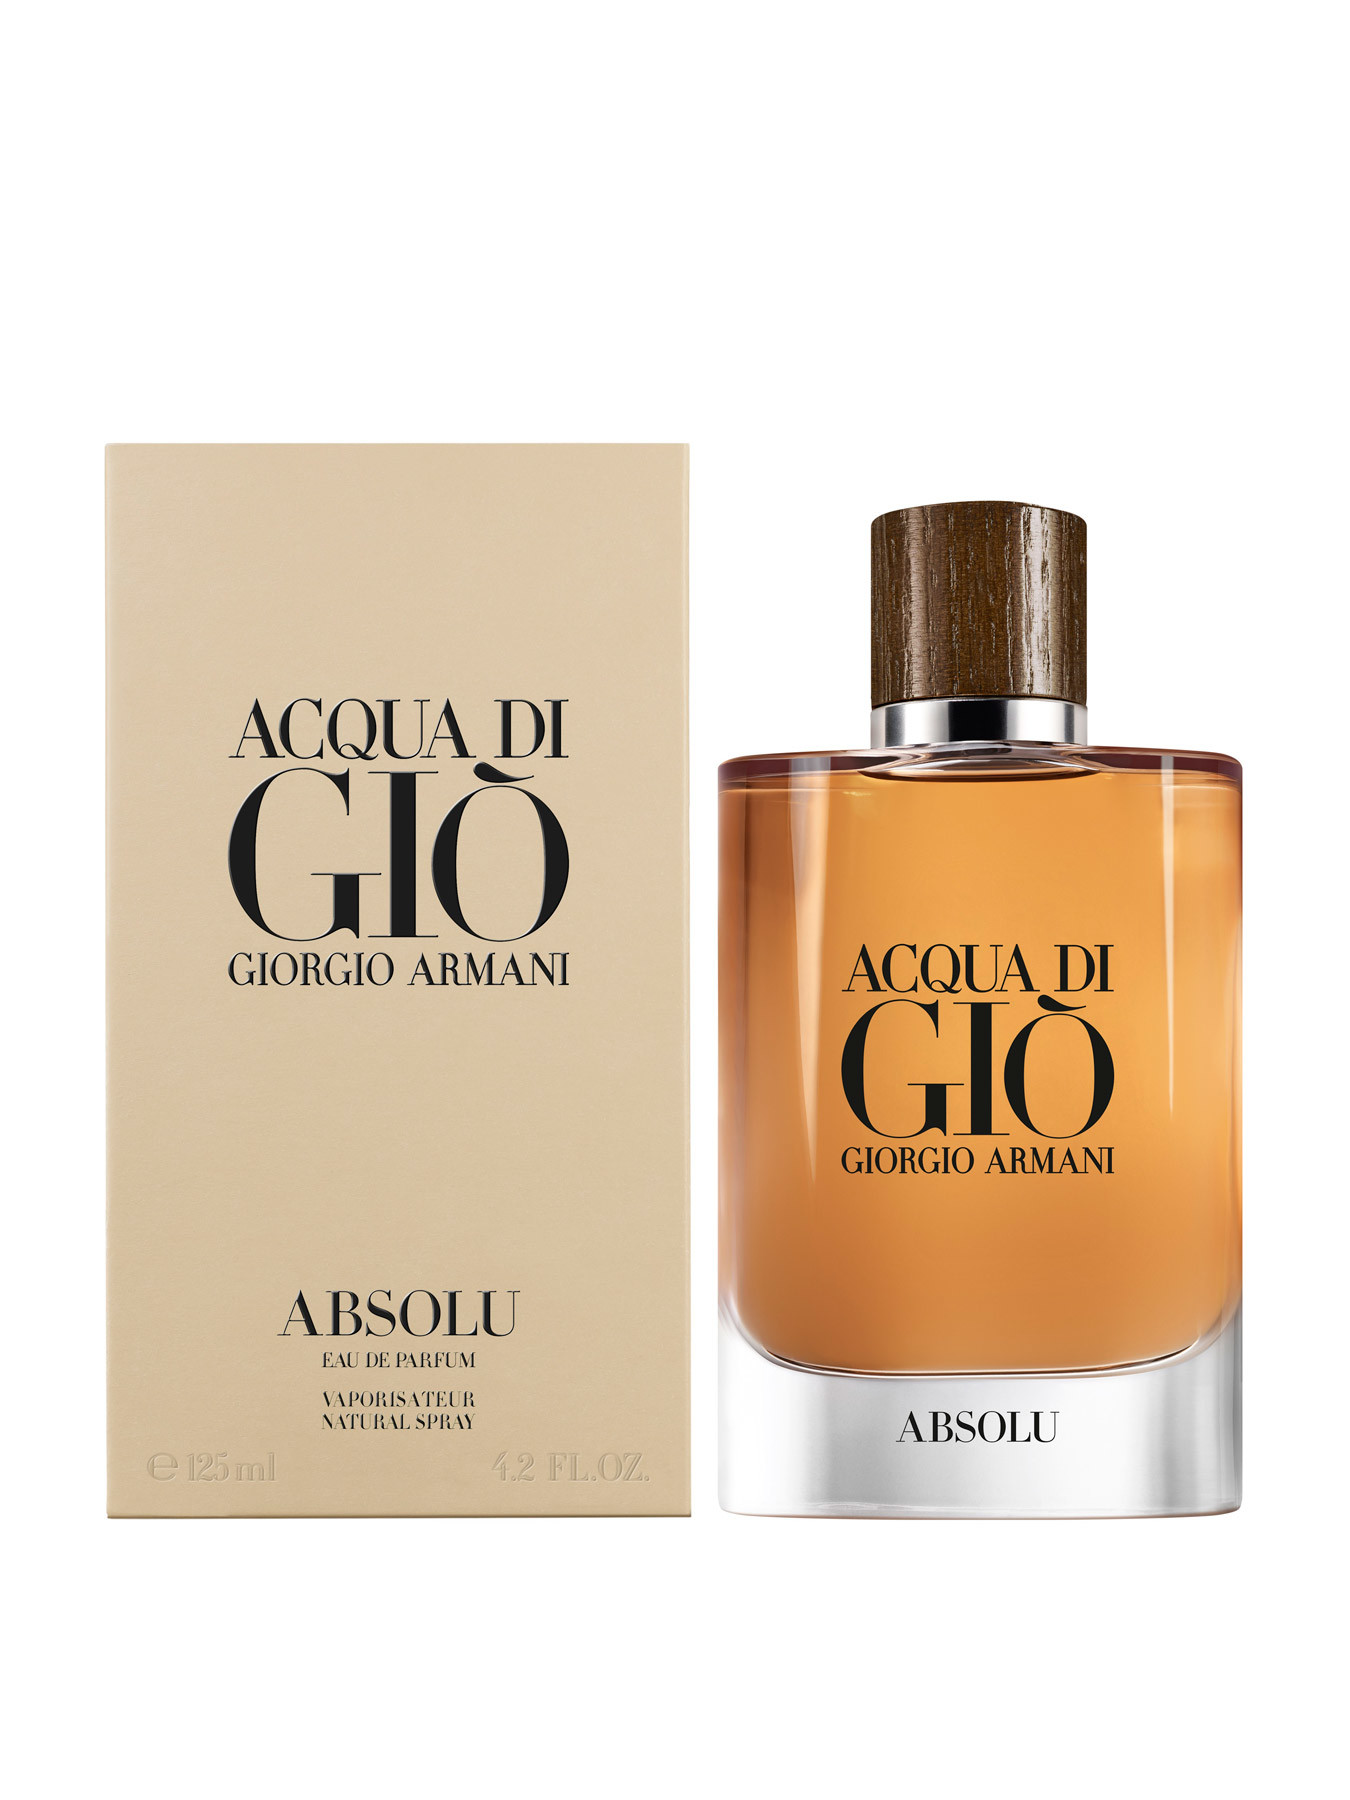 Giorgio Armani Acqua di Giò Absolu Eau de Parfum 125 ml | Fenwick